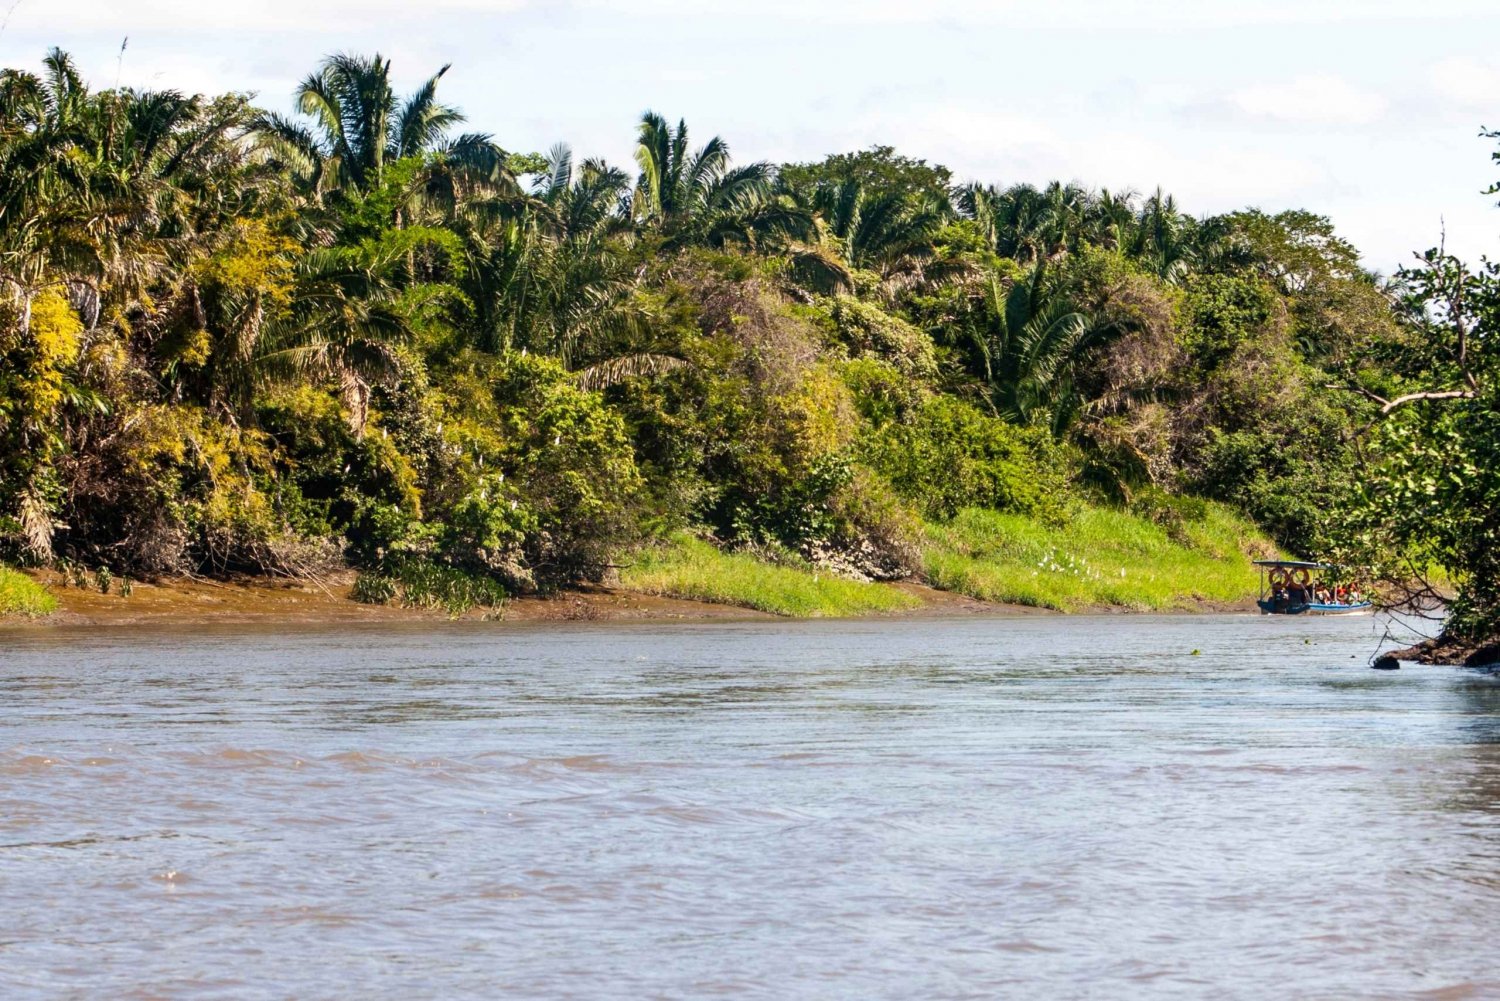 Z Guanacaste: Rejs po rzece Tempisque z talerzem owoców